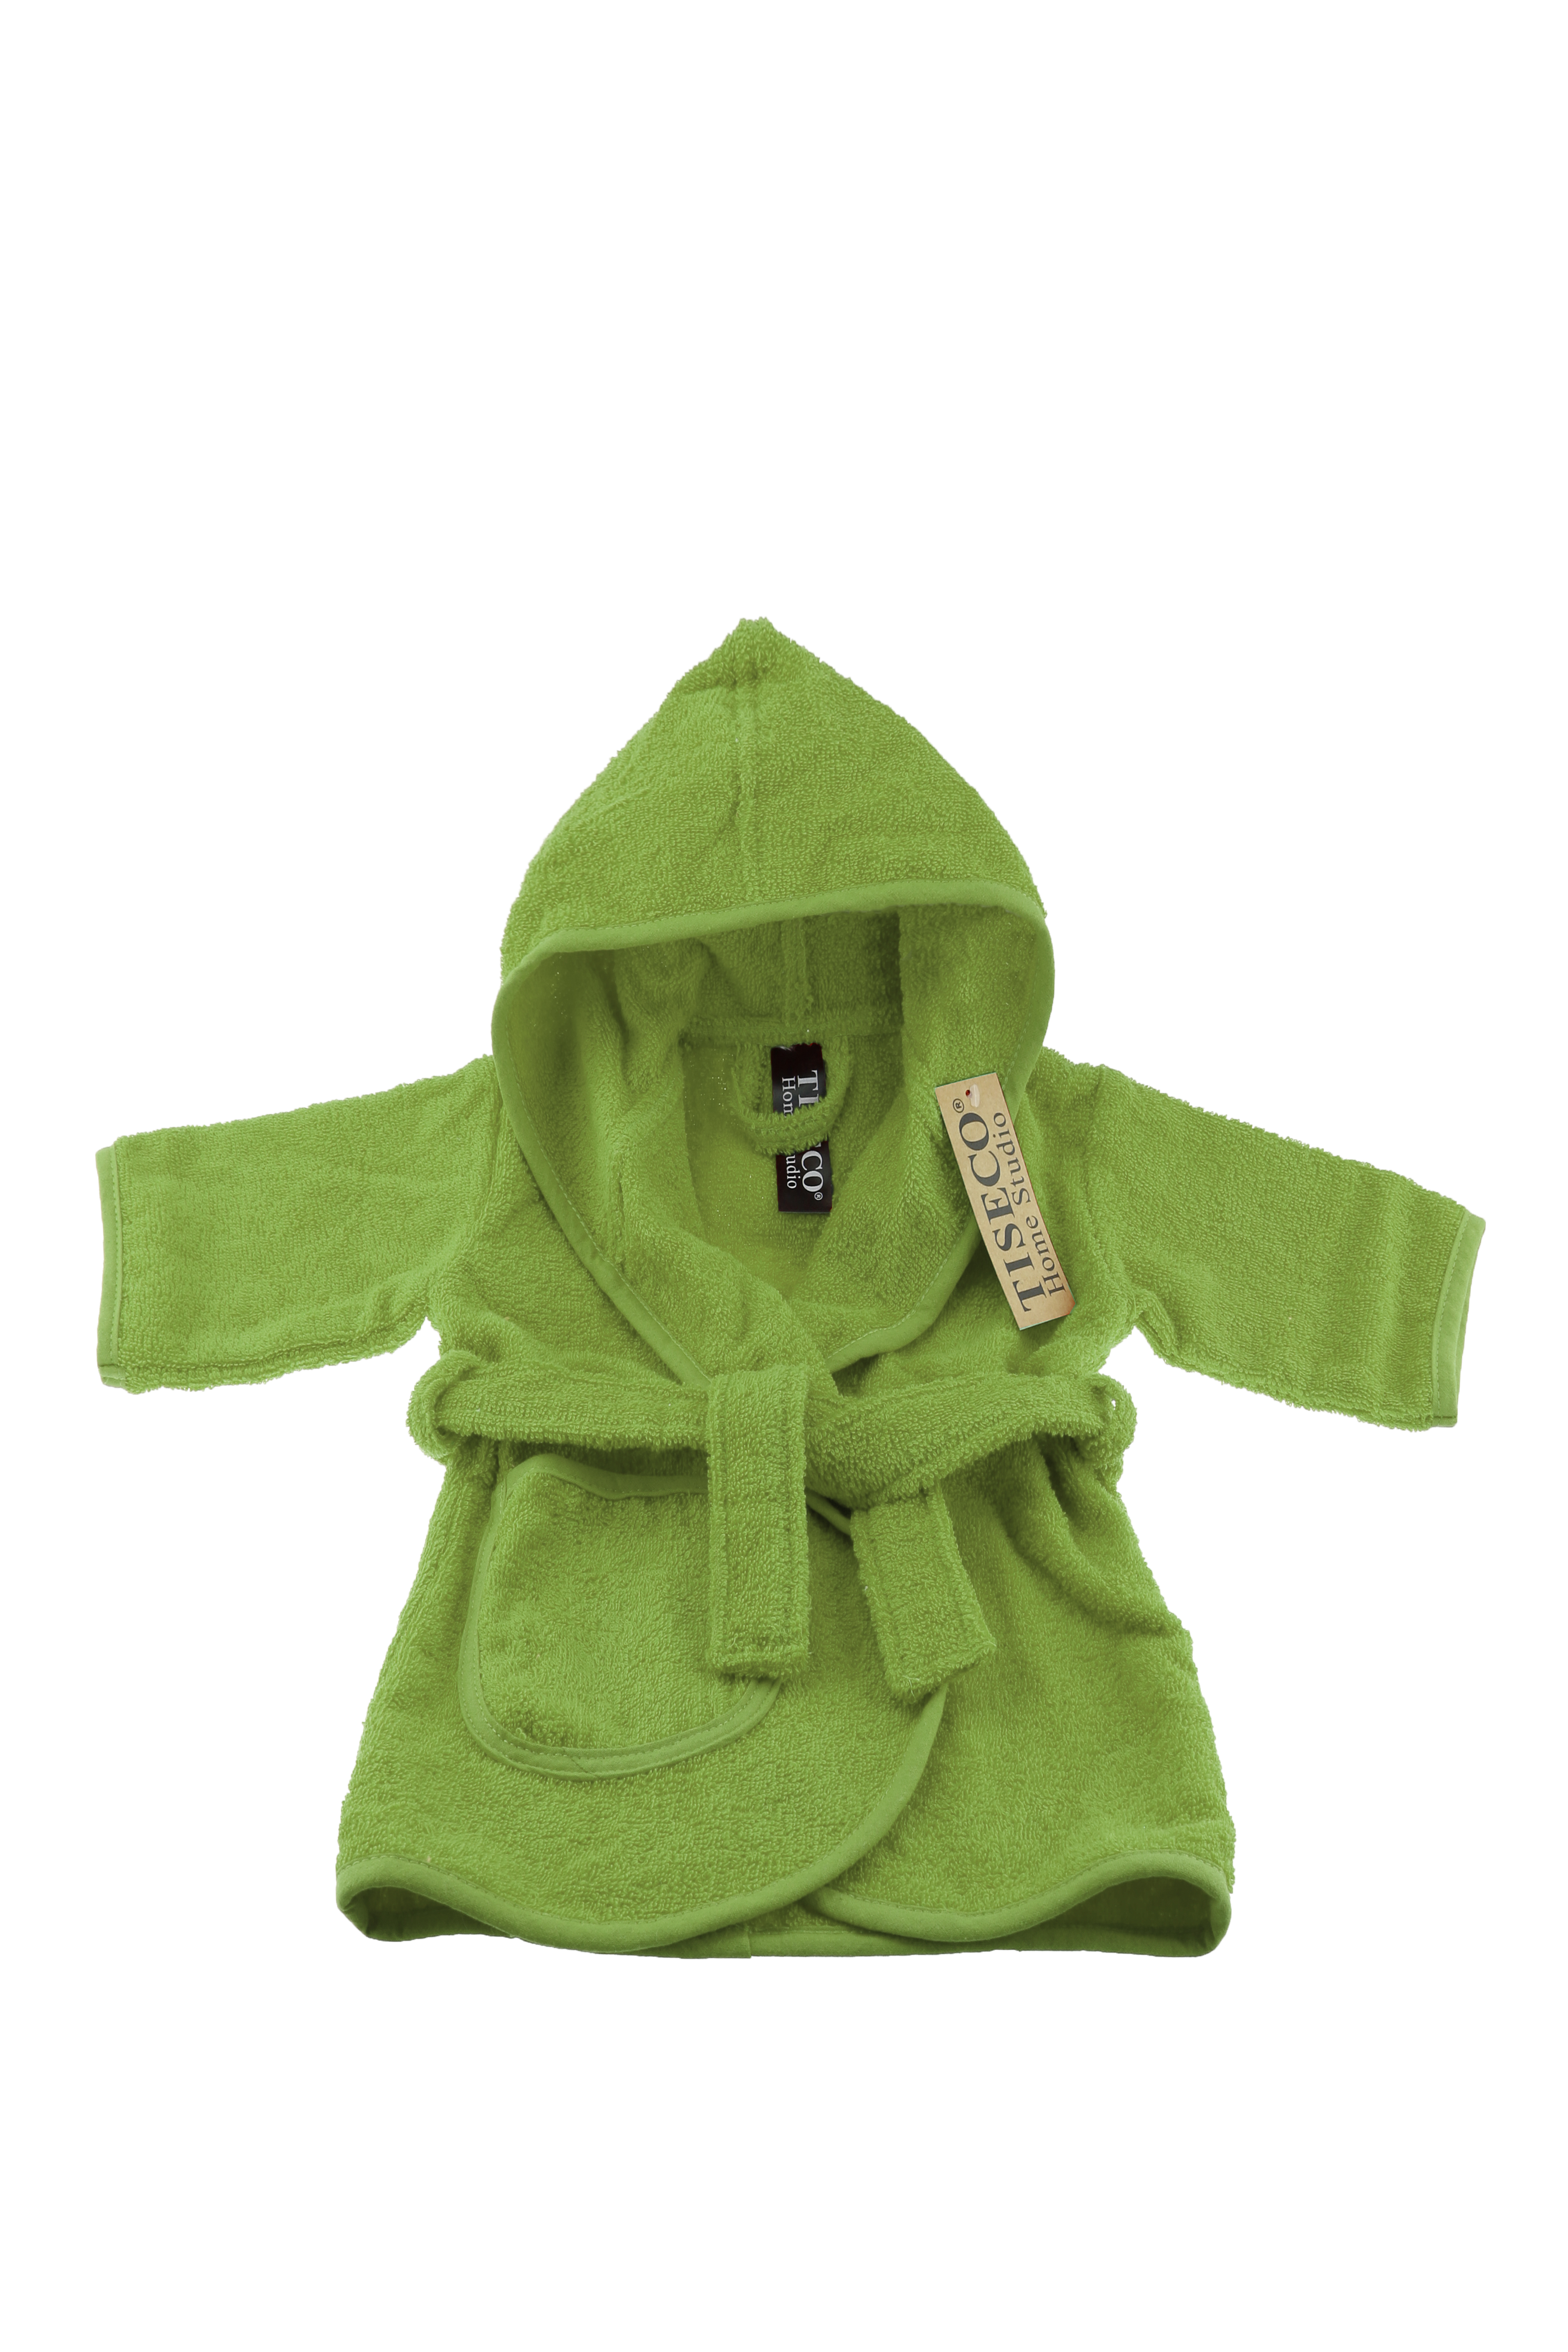 Baby badjas uni - 1-2 jaar, groen